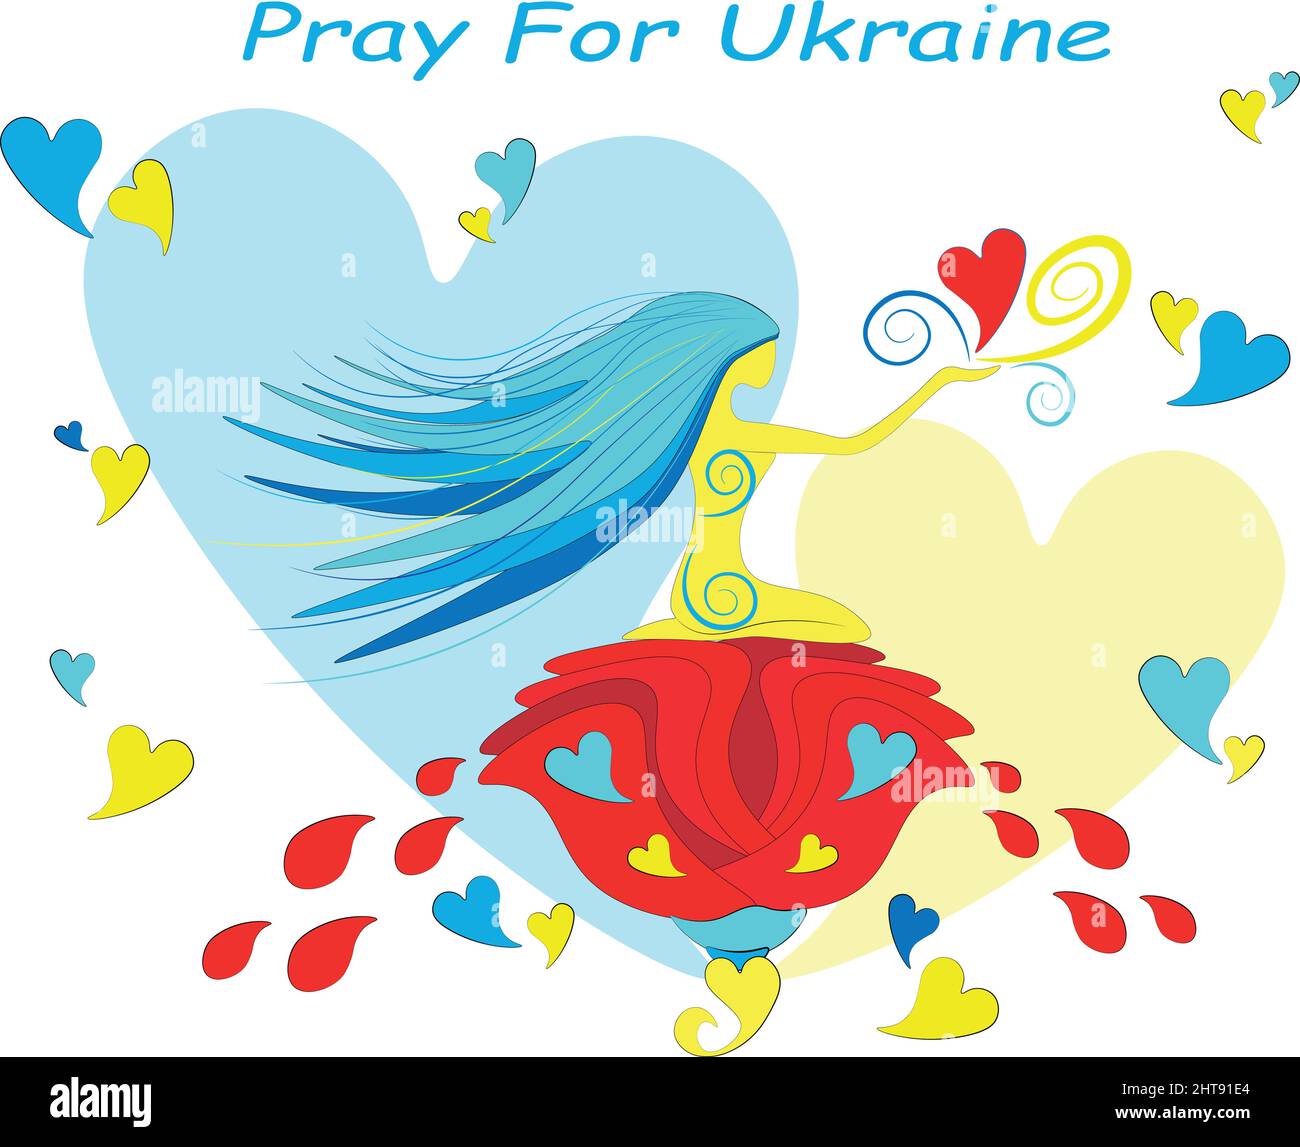 Ilustración de la oración por Ucrania. Ucrania es una dama amable, está llena de corazones puros de su pueblo y necesita el apoyo de todo el mundo. L Ilustración del Vector